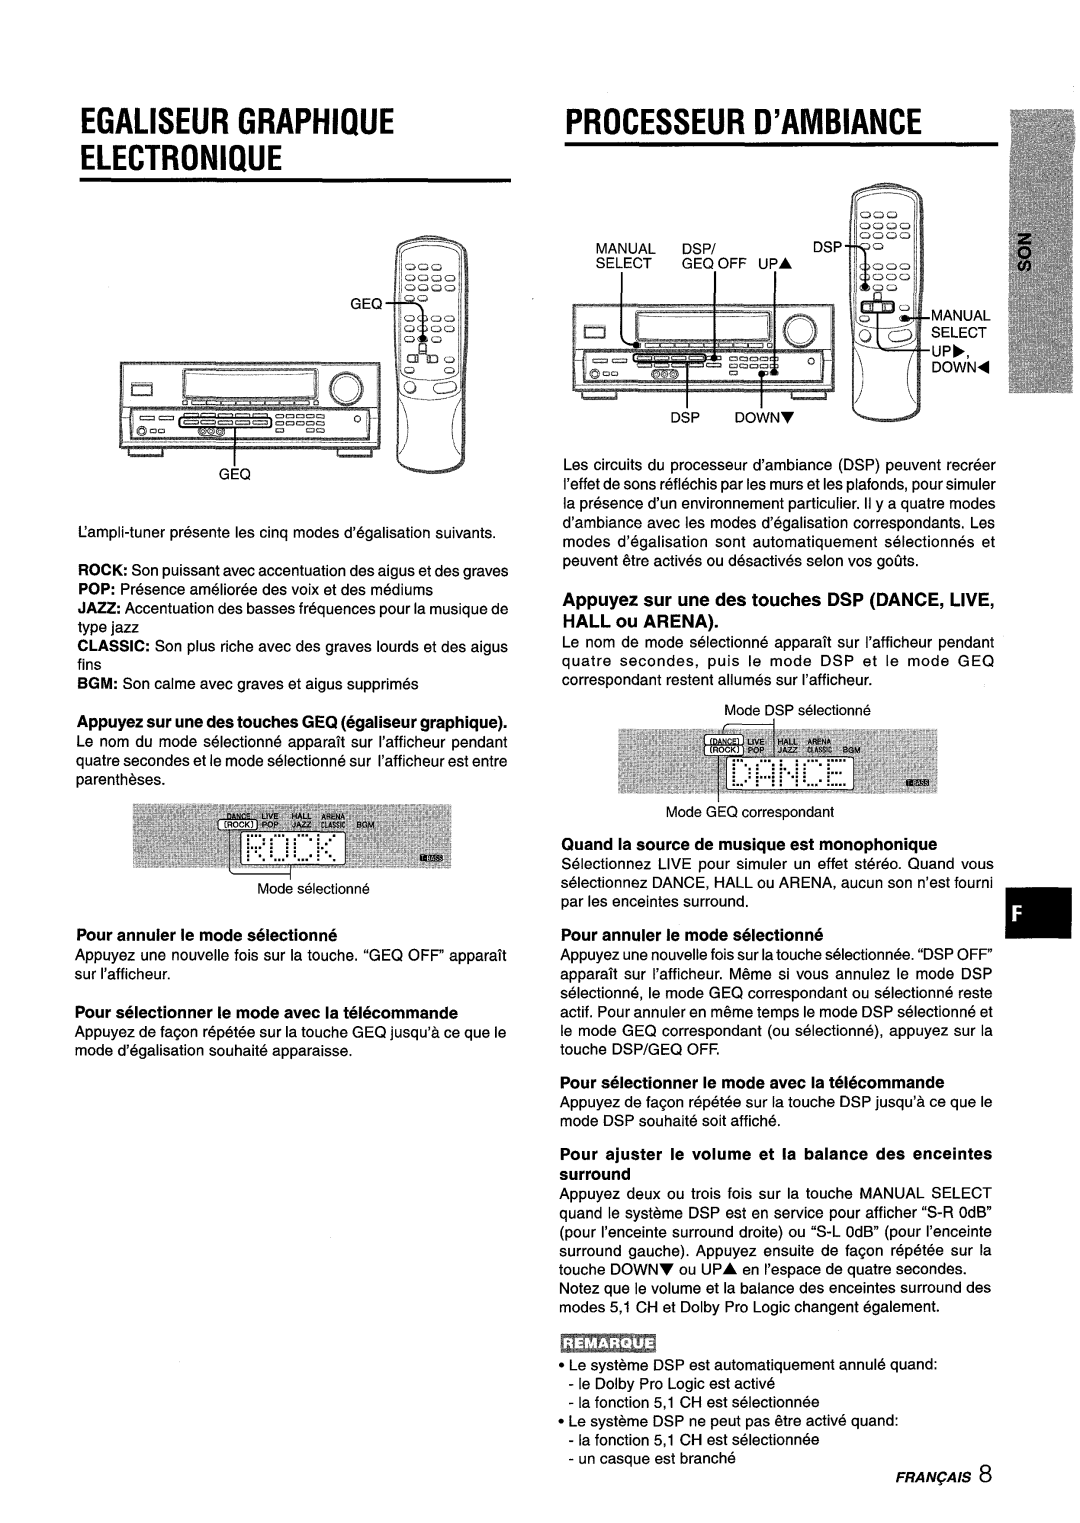 Aiwa AV-D25 Egaliseur Graphique Electronique, Processeur D’Ambiance, Appuyez sur une des touches GEQ egaliseur graphique 